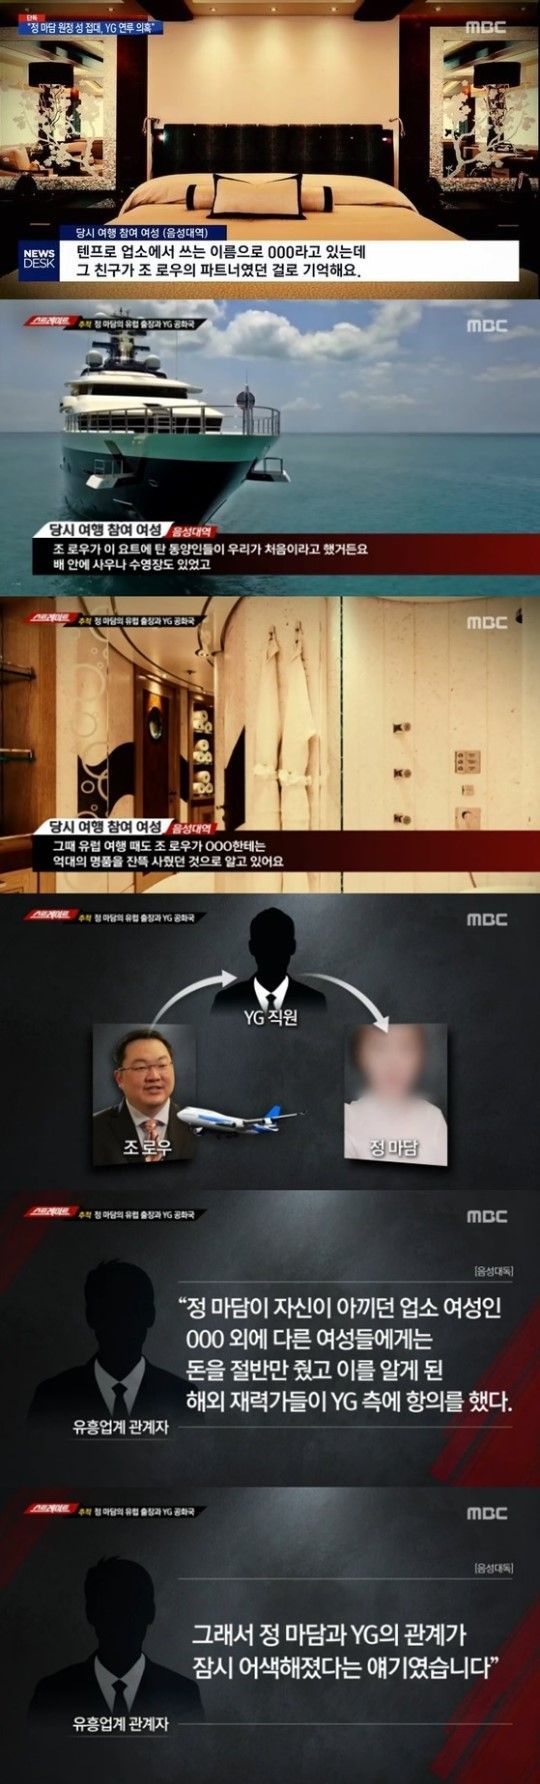 'YG 양현석 성접대 의혹' 말레이시아 출신 재력가 조로우 누구?